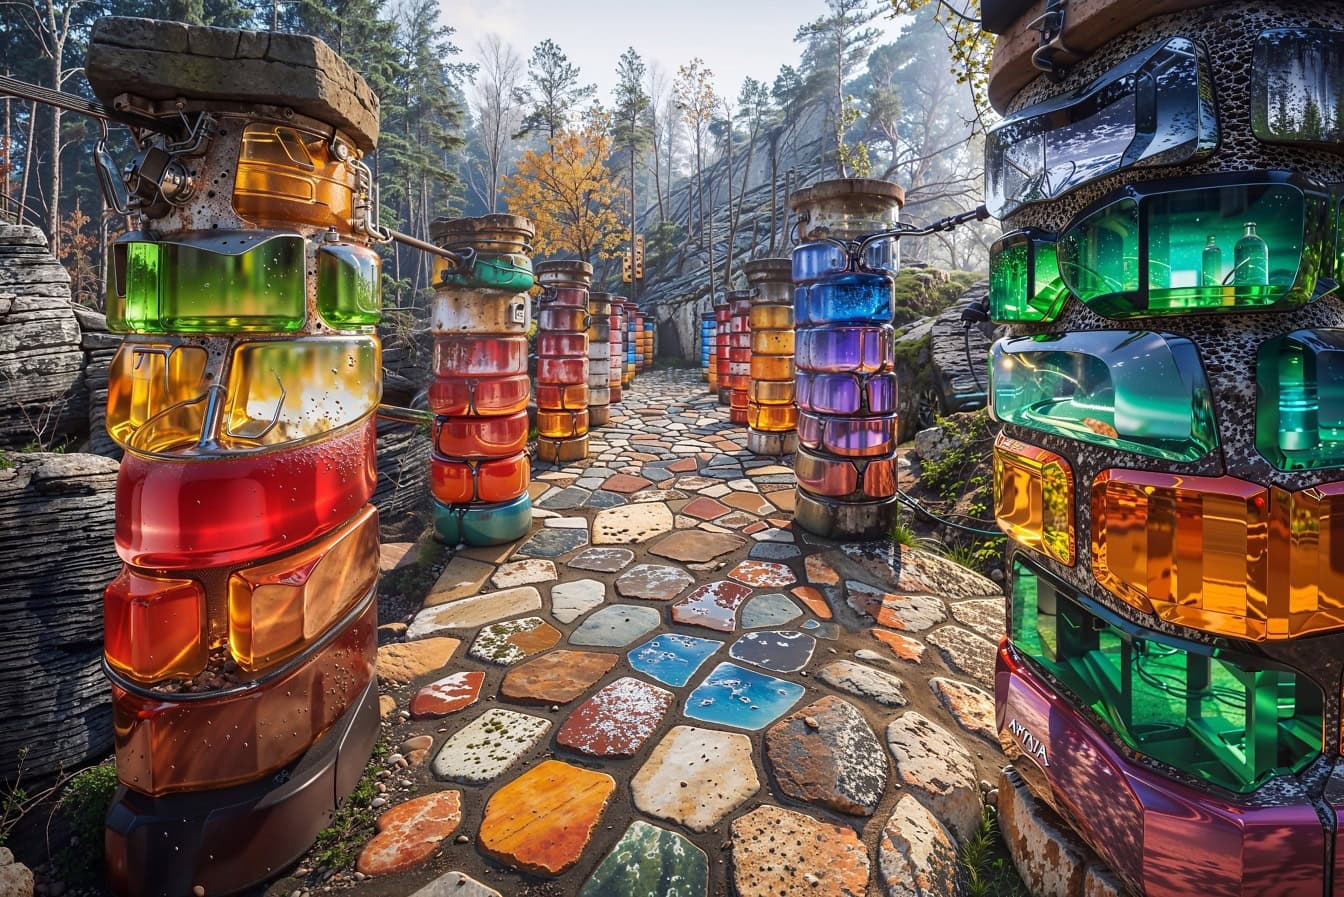 Il sentiero con colonne fatte di pietre preziose colorate e luminose